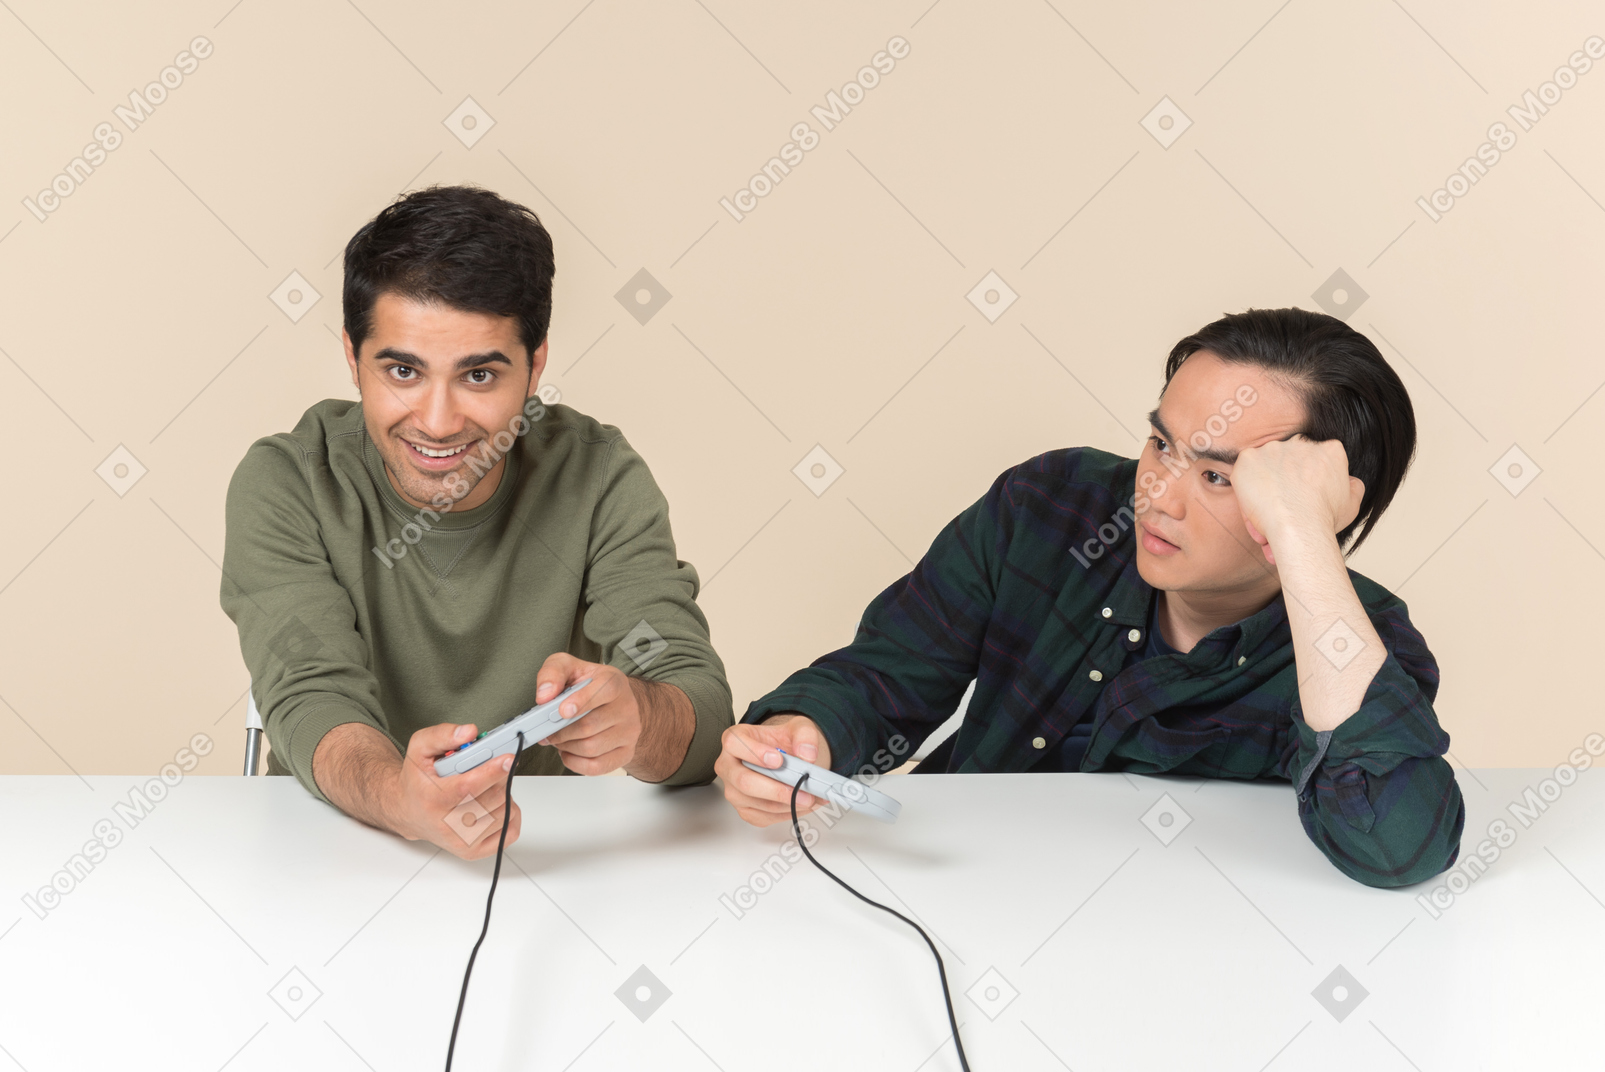 Amigos interraciales jugando videojuegos y uno de ellos parece molesto